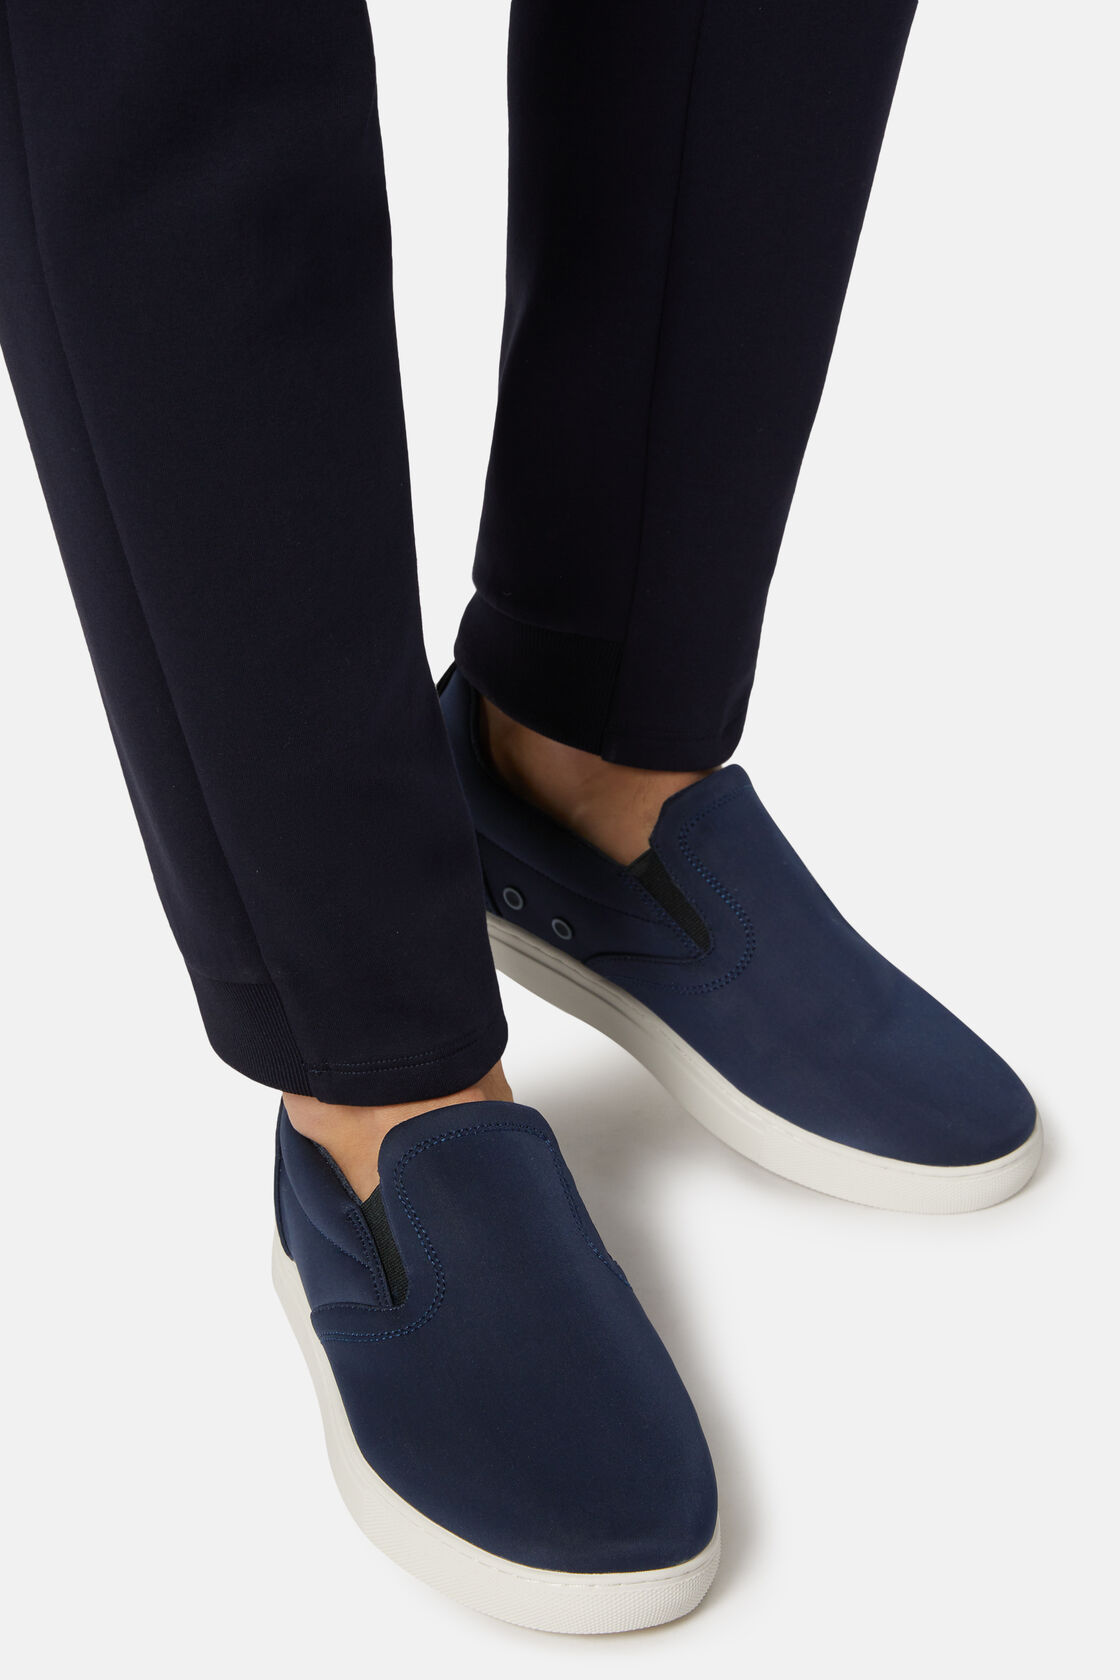 Παπούτσια χωρίς κορδόνια σε μπλε ναυτικό χρώμα, από τεχνικό ύφασμα, Navy blue, hi-res